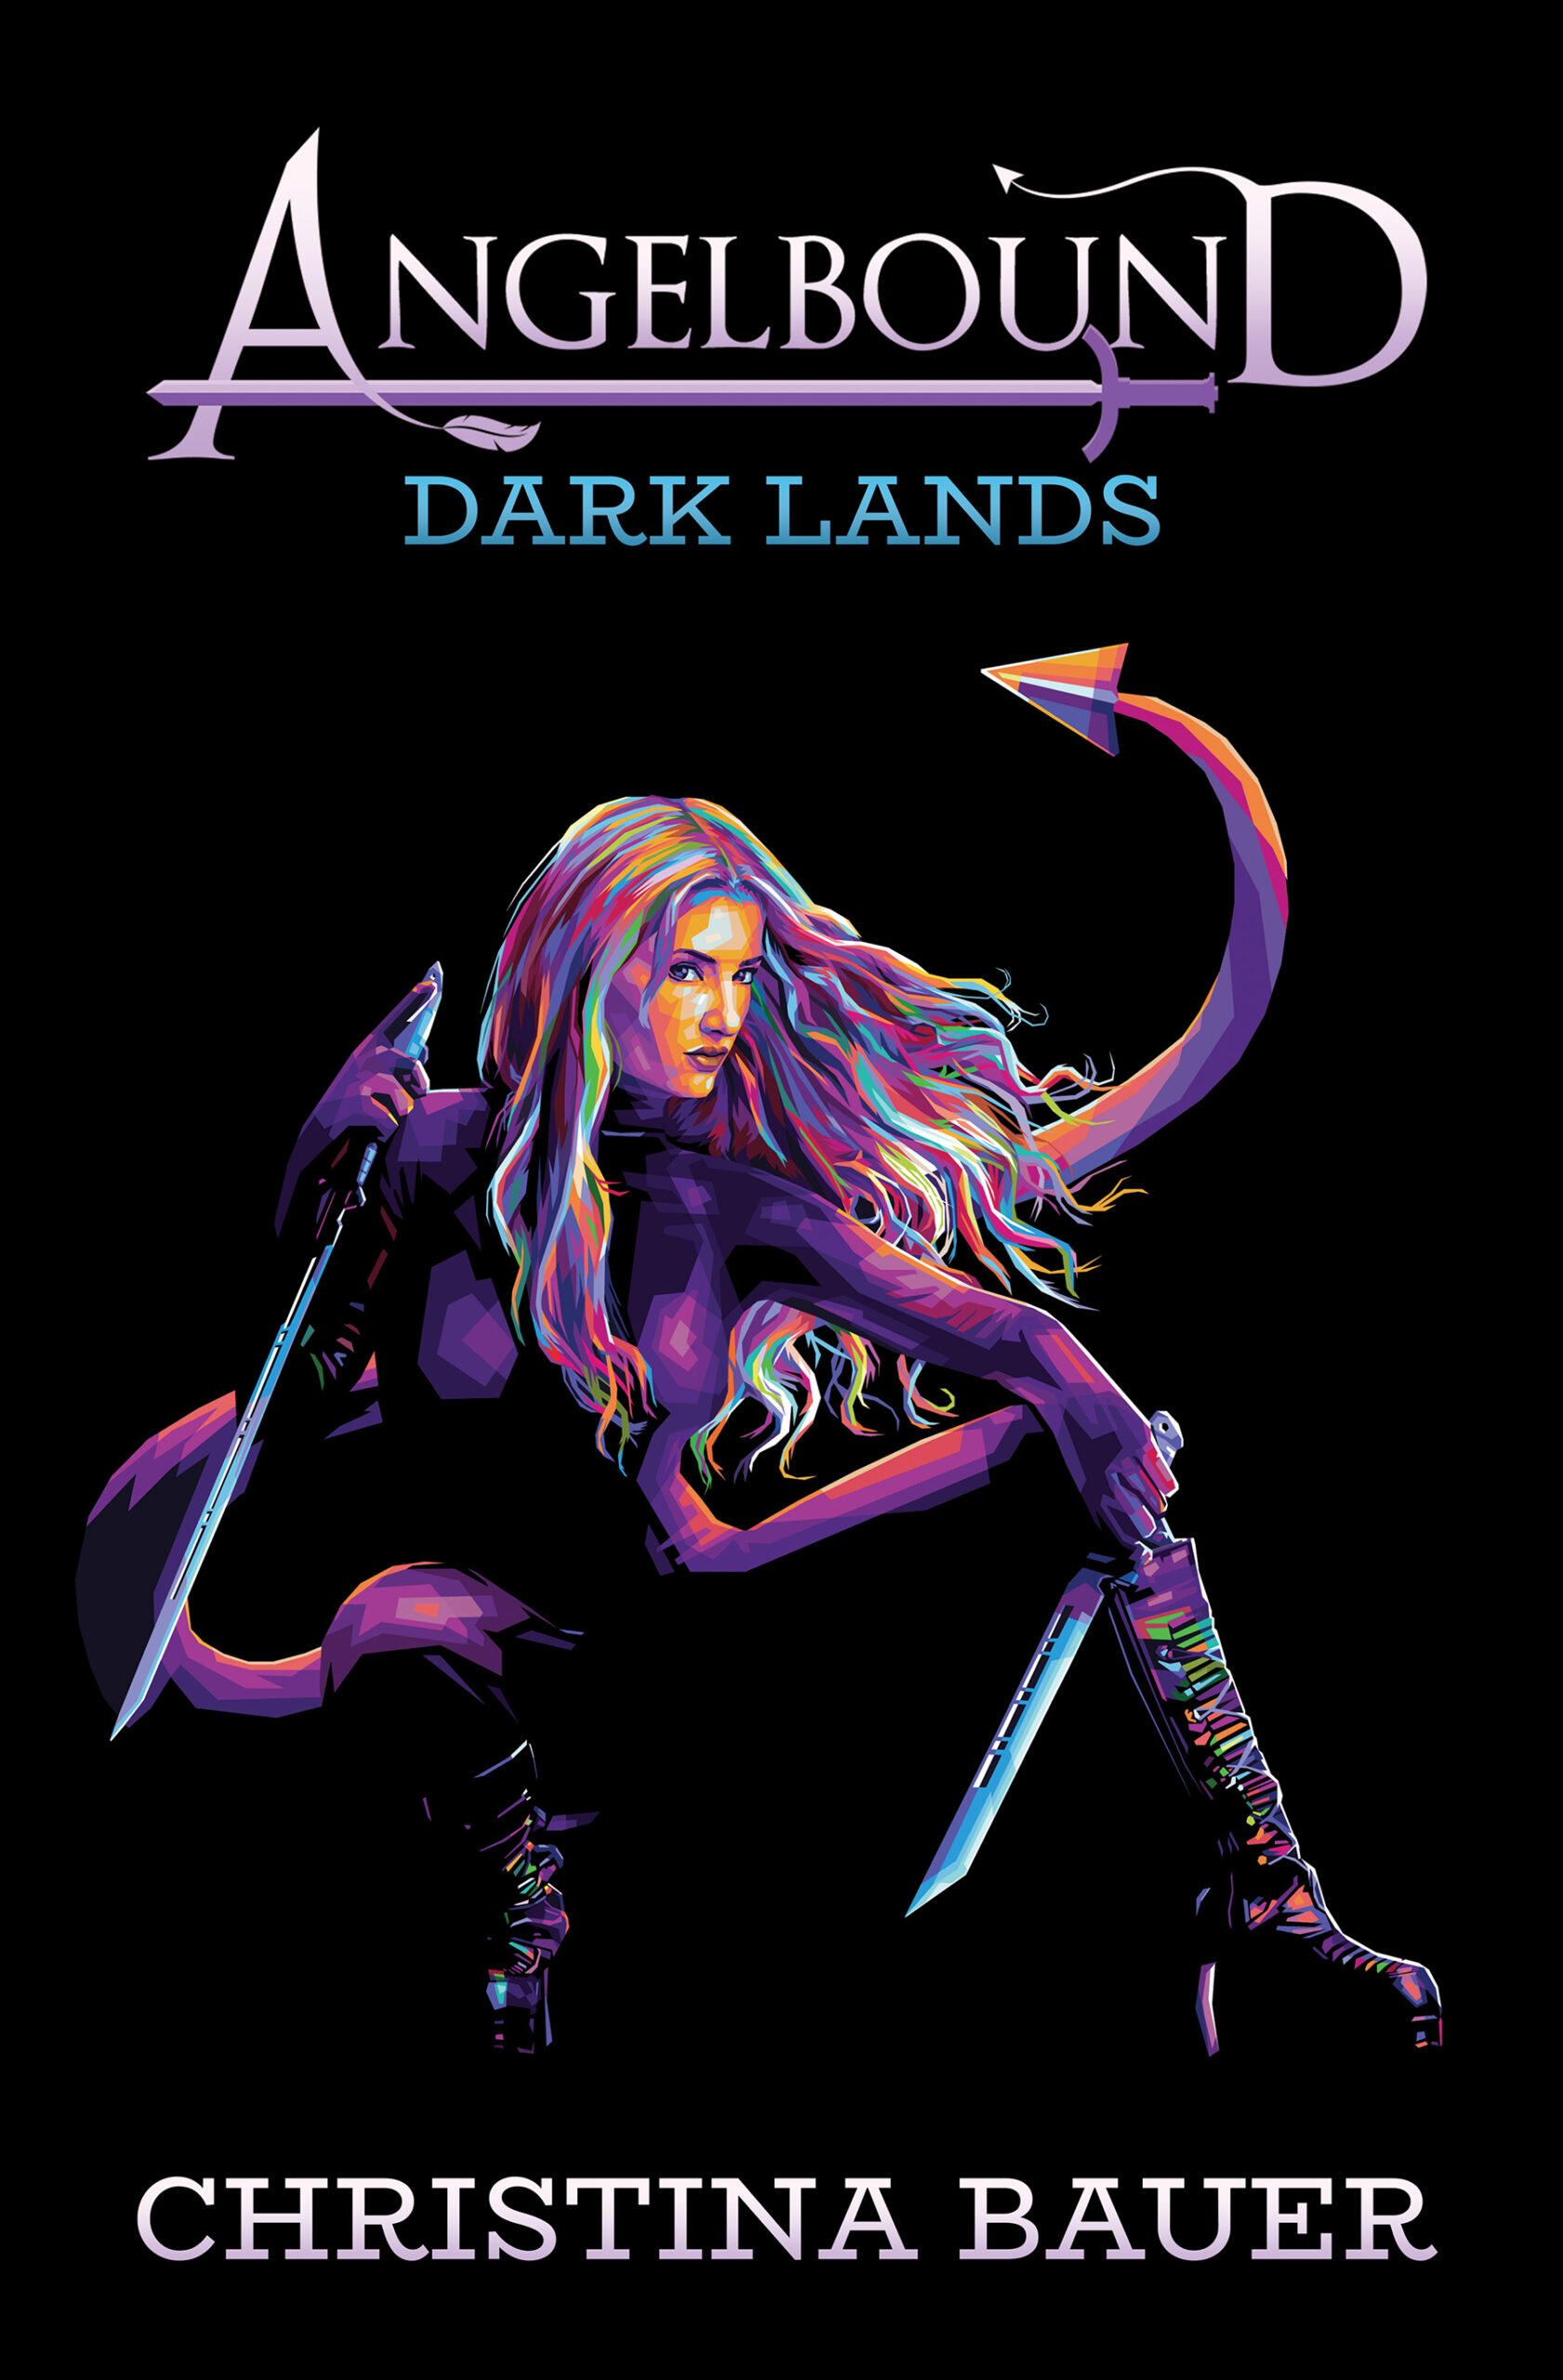 The Dark Lands (Angelbound Origins 5)